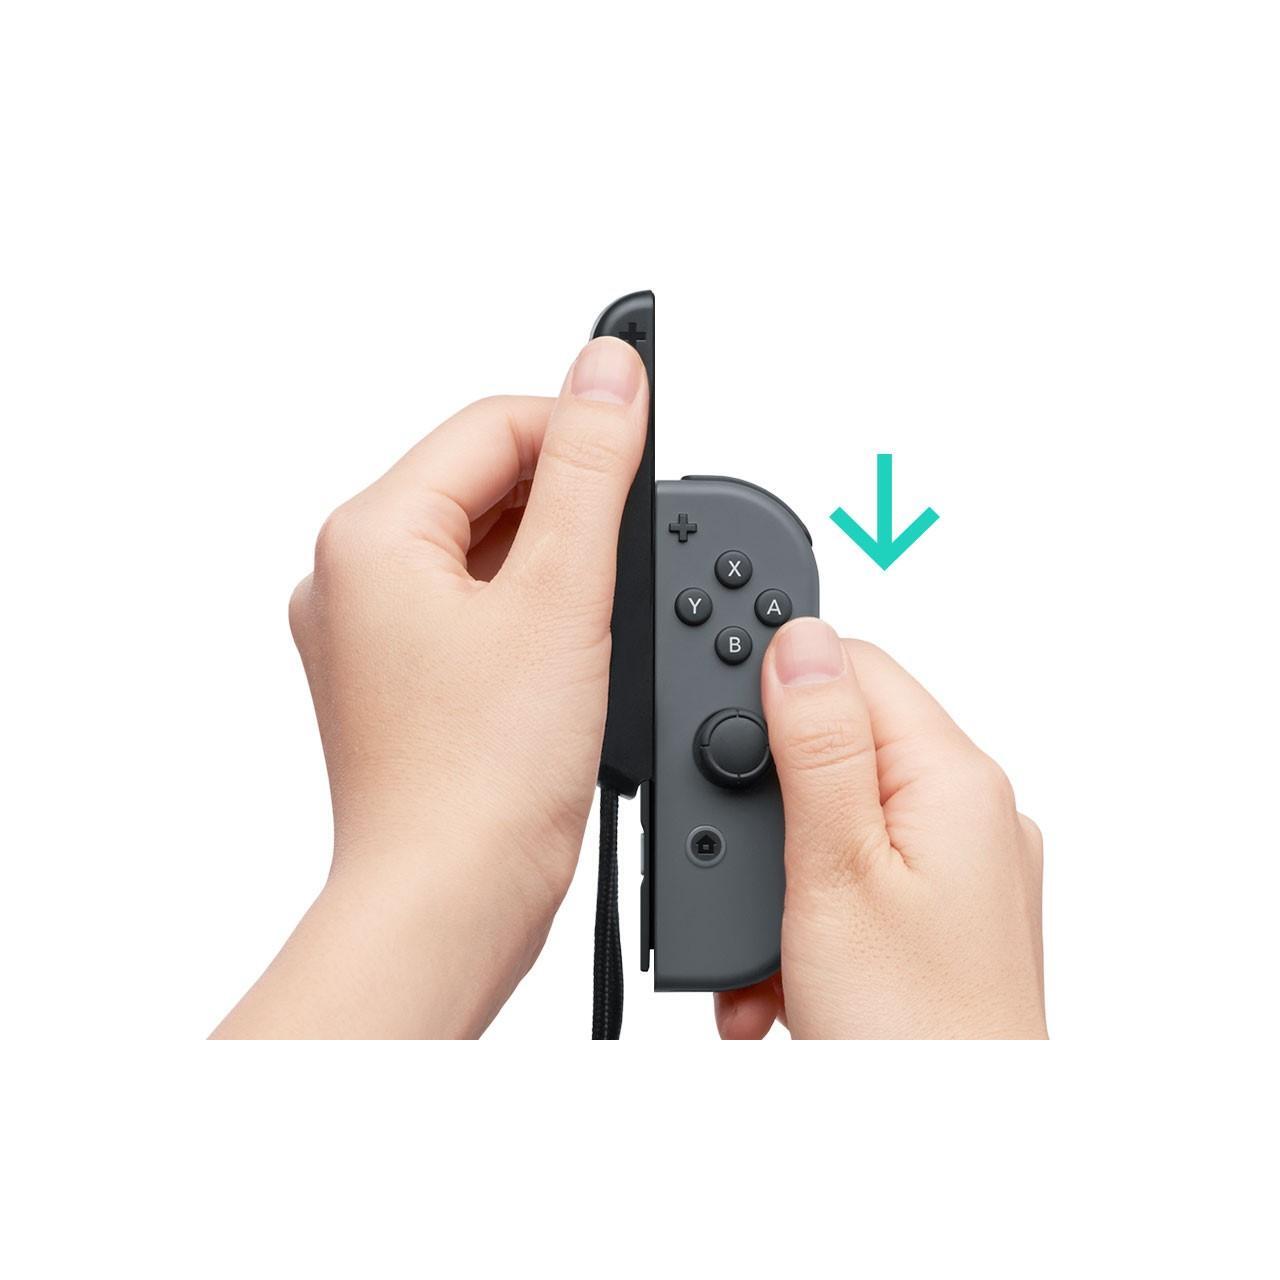 ziek Dosering Strikt Nintendo Joy-Con Controllers - Neon Groen en Neon Roze (Switch) kopen - €73